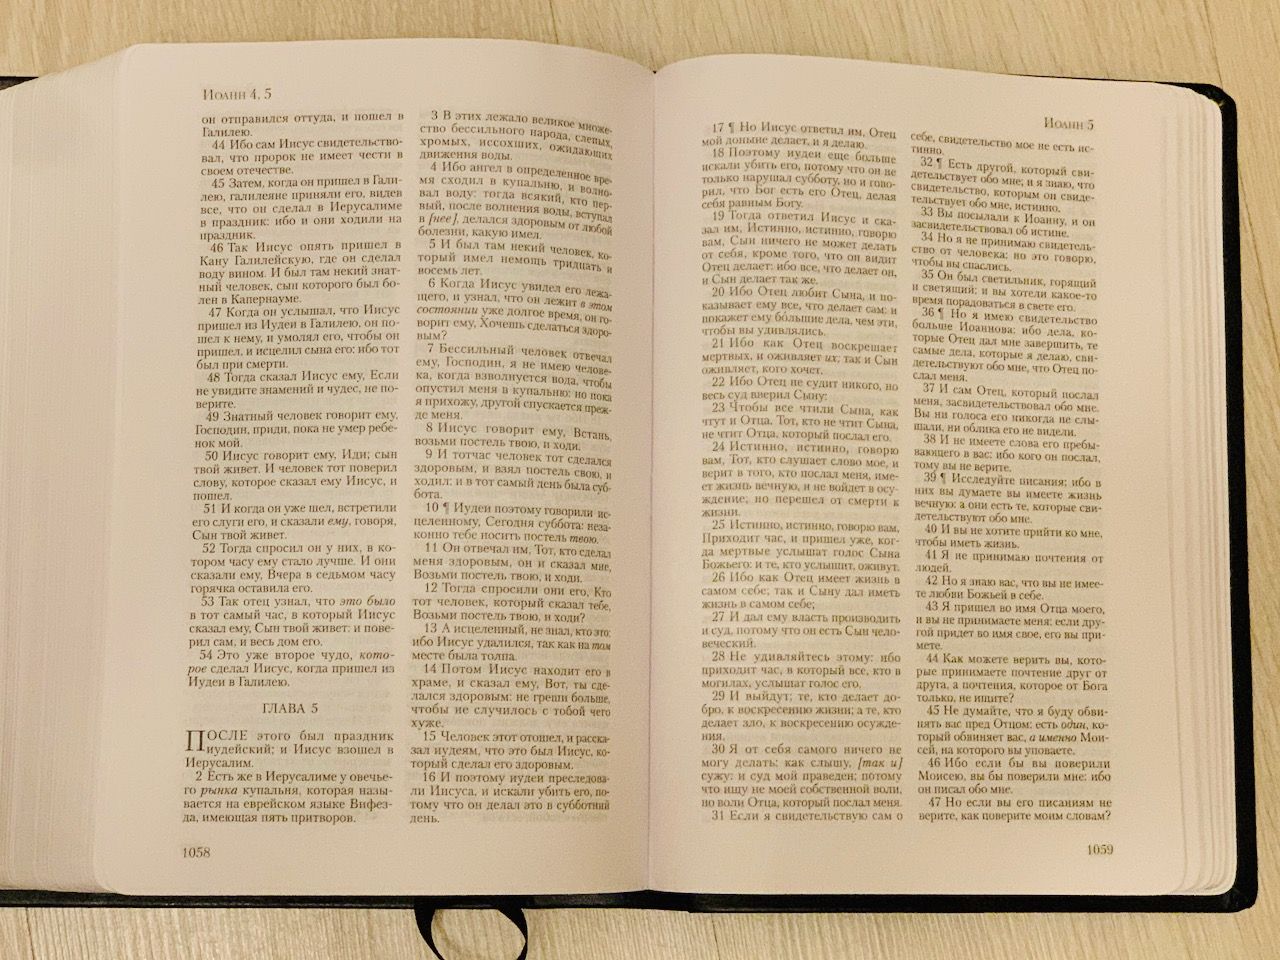 Библия Короля Иакова, 5-е издание (Полная Ветхий и Новый Завет) с закладкой, гибкий переплет из термовинила- перевод Короля Иакова (1611 год) на русский язык, крупный шриф